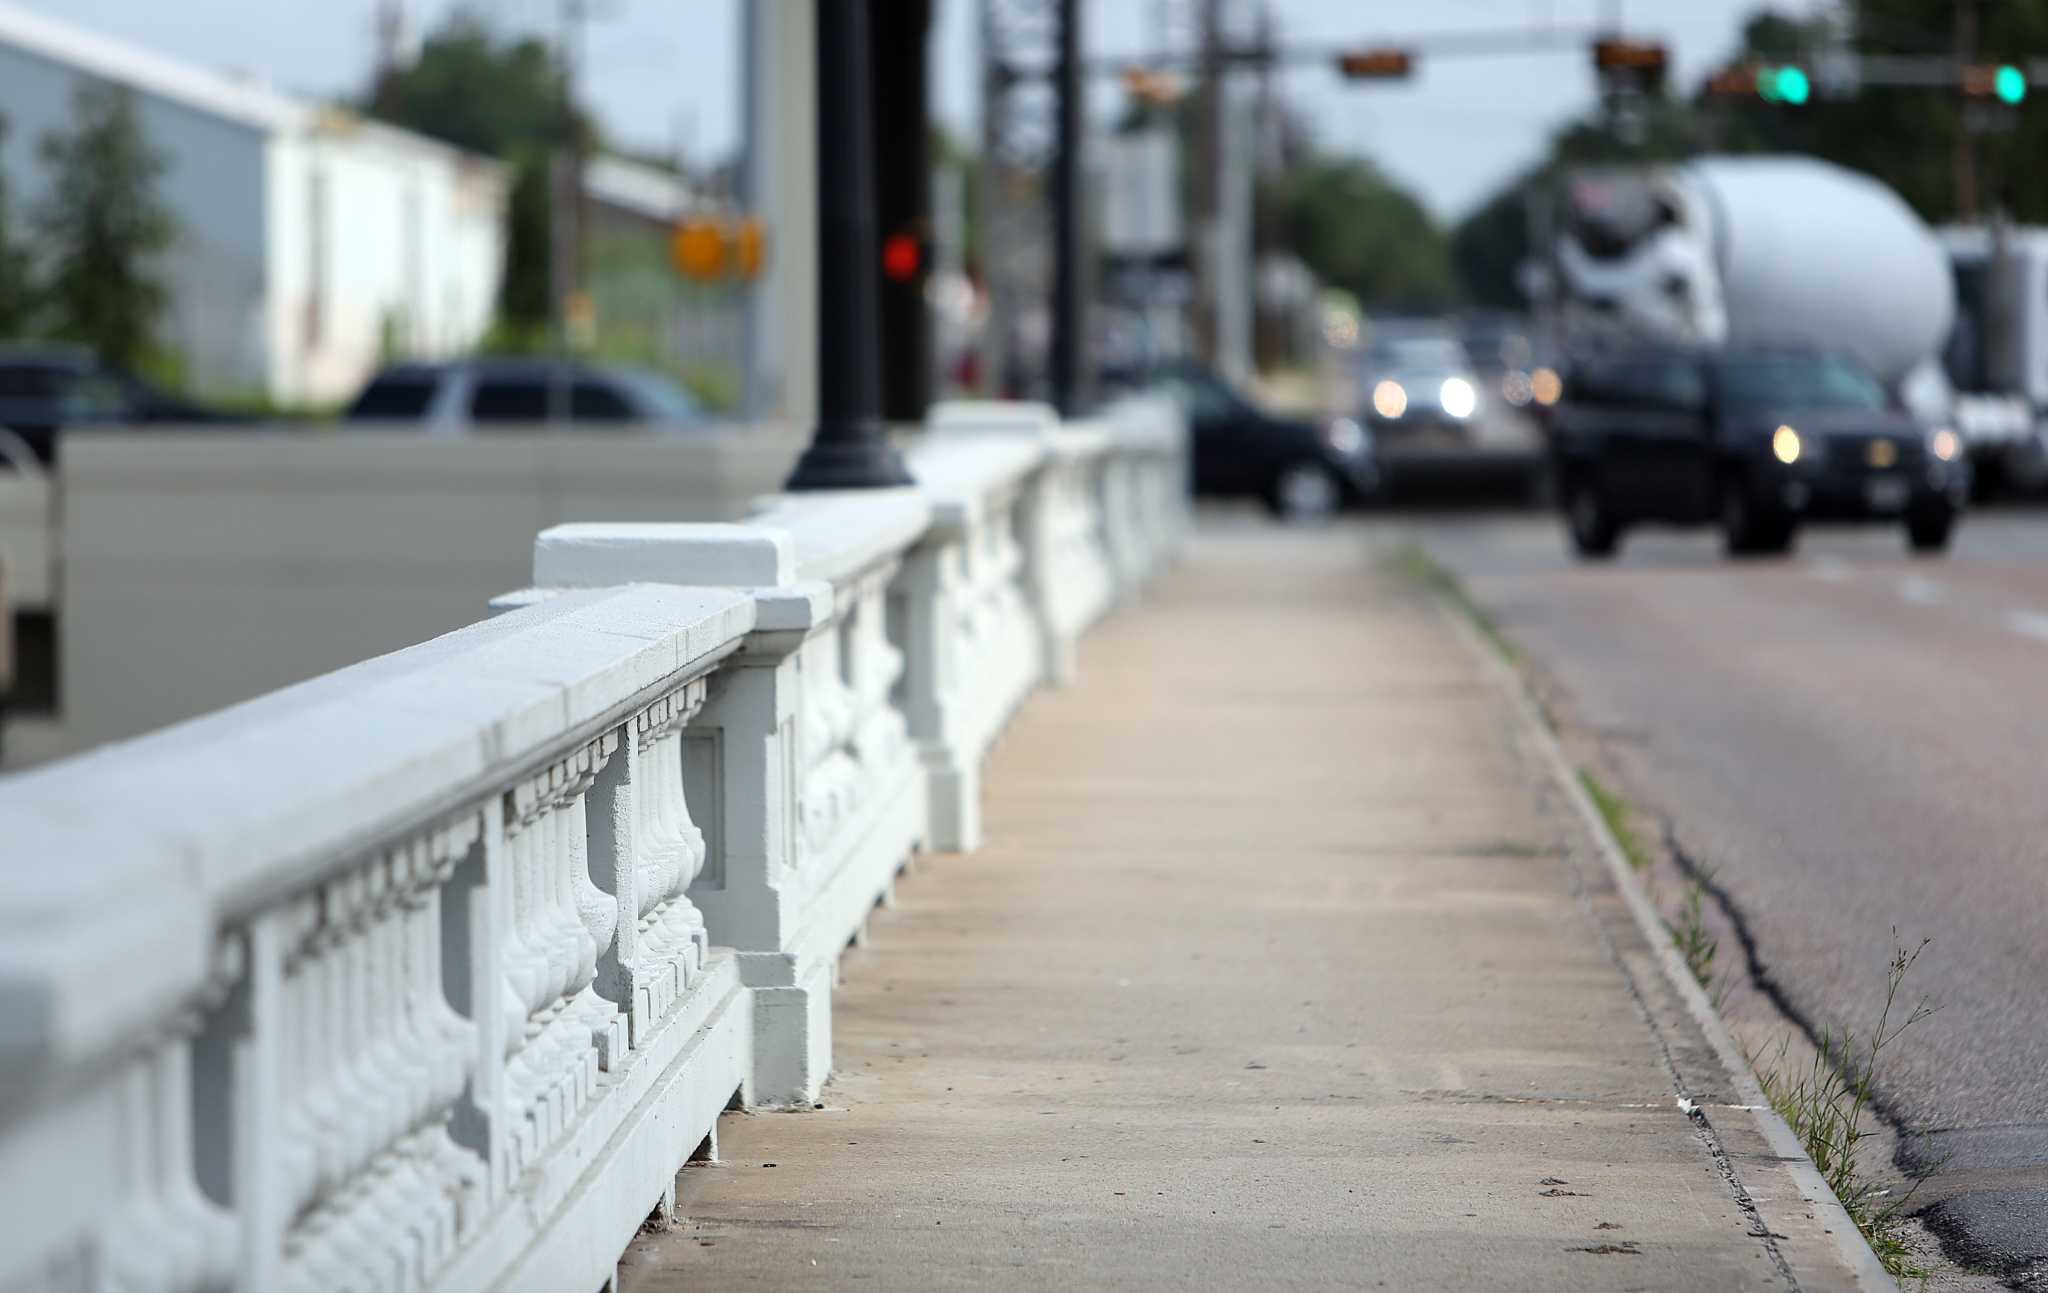 Houston-area bridges in need of repair - Chron.com